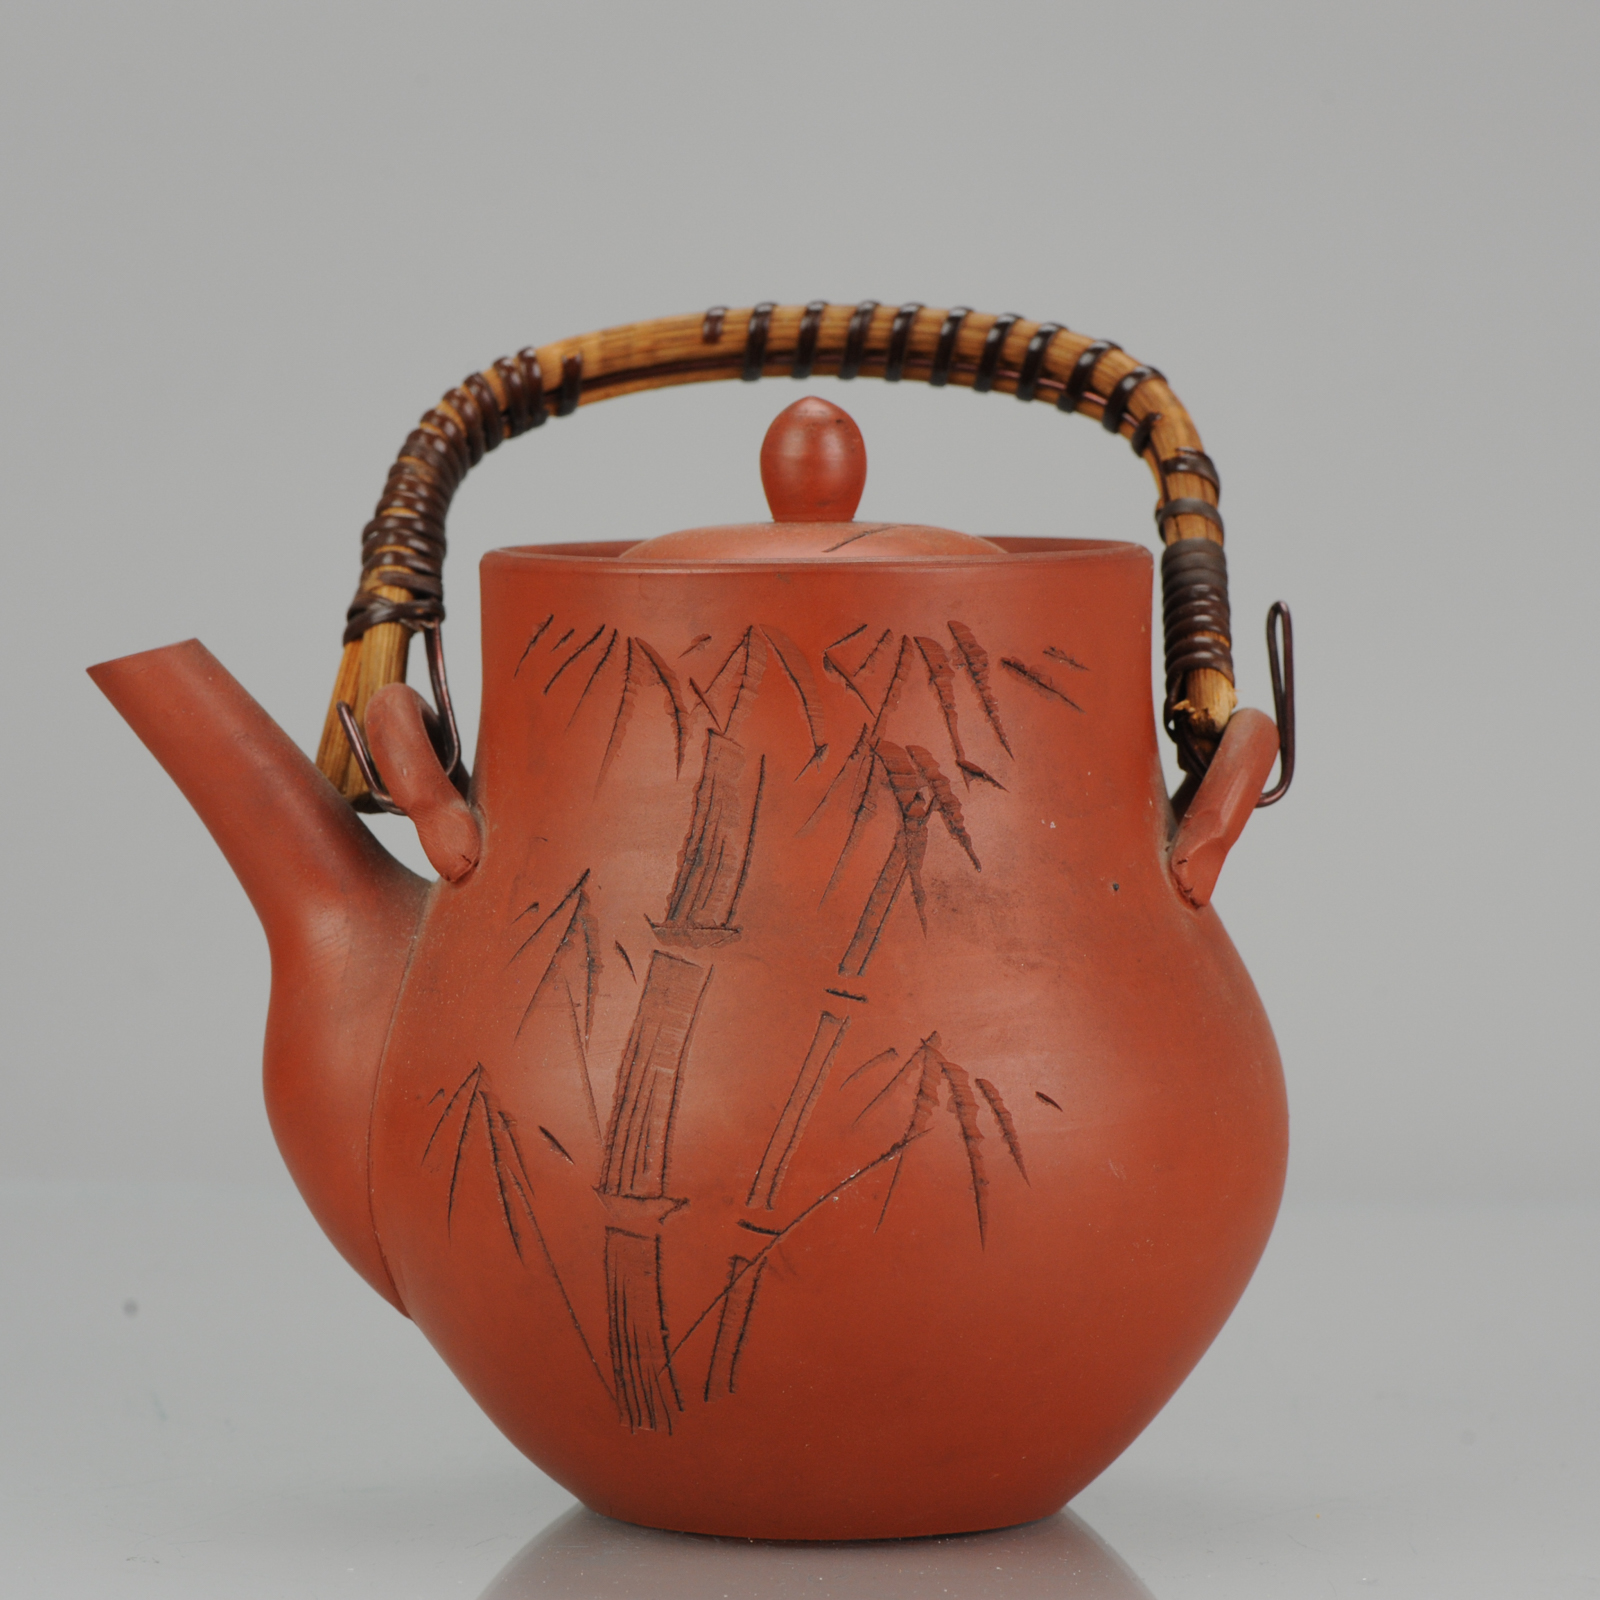 Antique 19C Japanese Banko or Tokoname Teapot Japanese Yixing clay